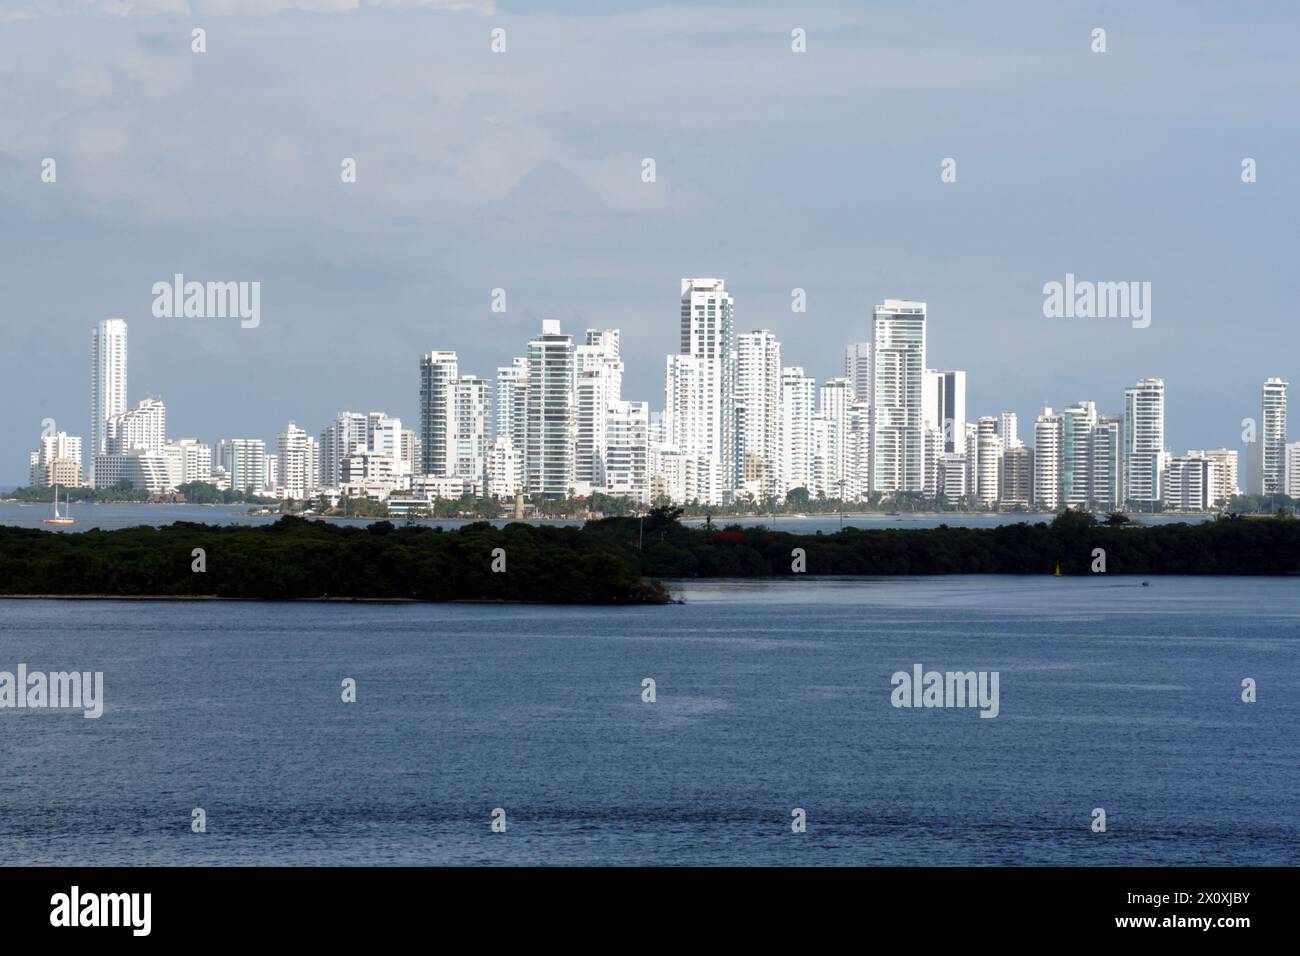 L'horizon lointain de Carthagène, en Colombie, est marqué par des structures modernes imposantes, visibles depuis le port sous le soleil brillant d'une journée claire Banque D'Images